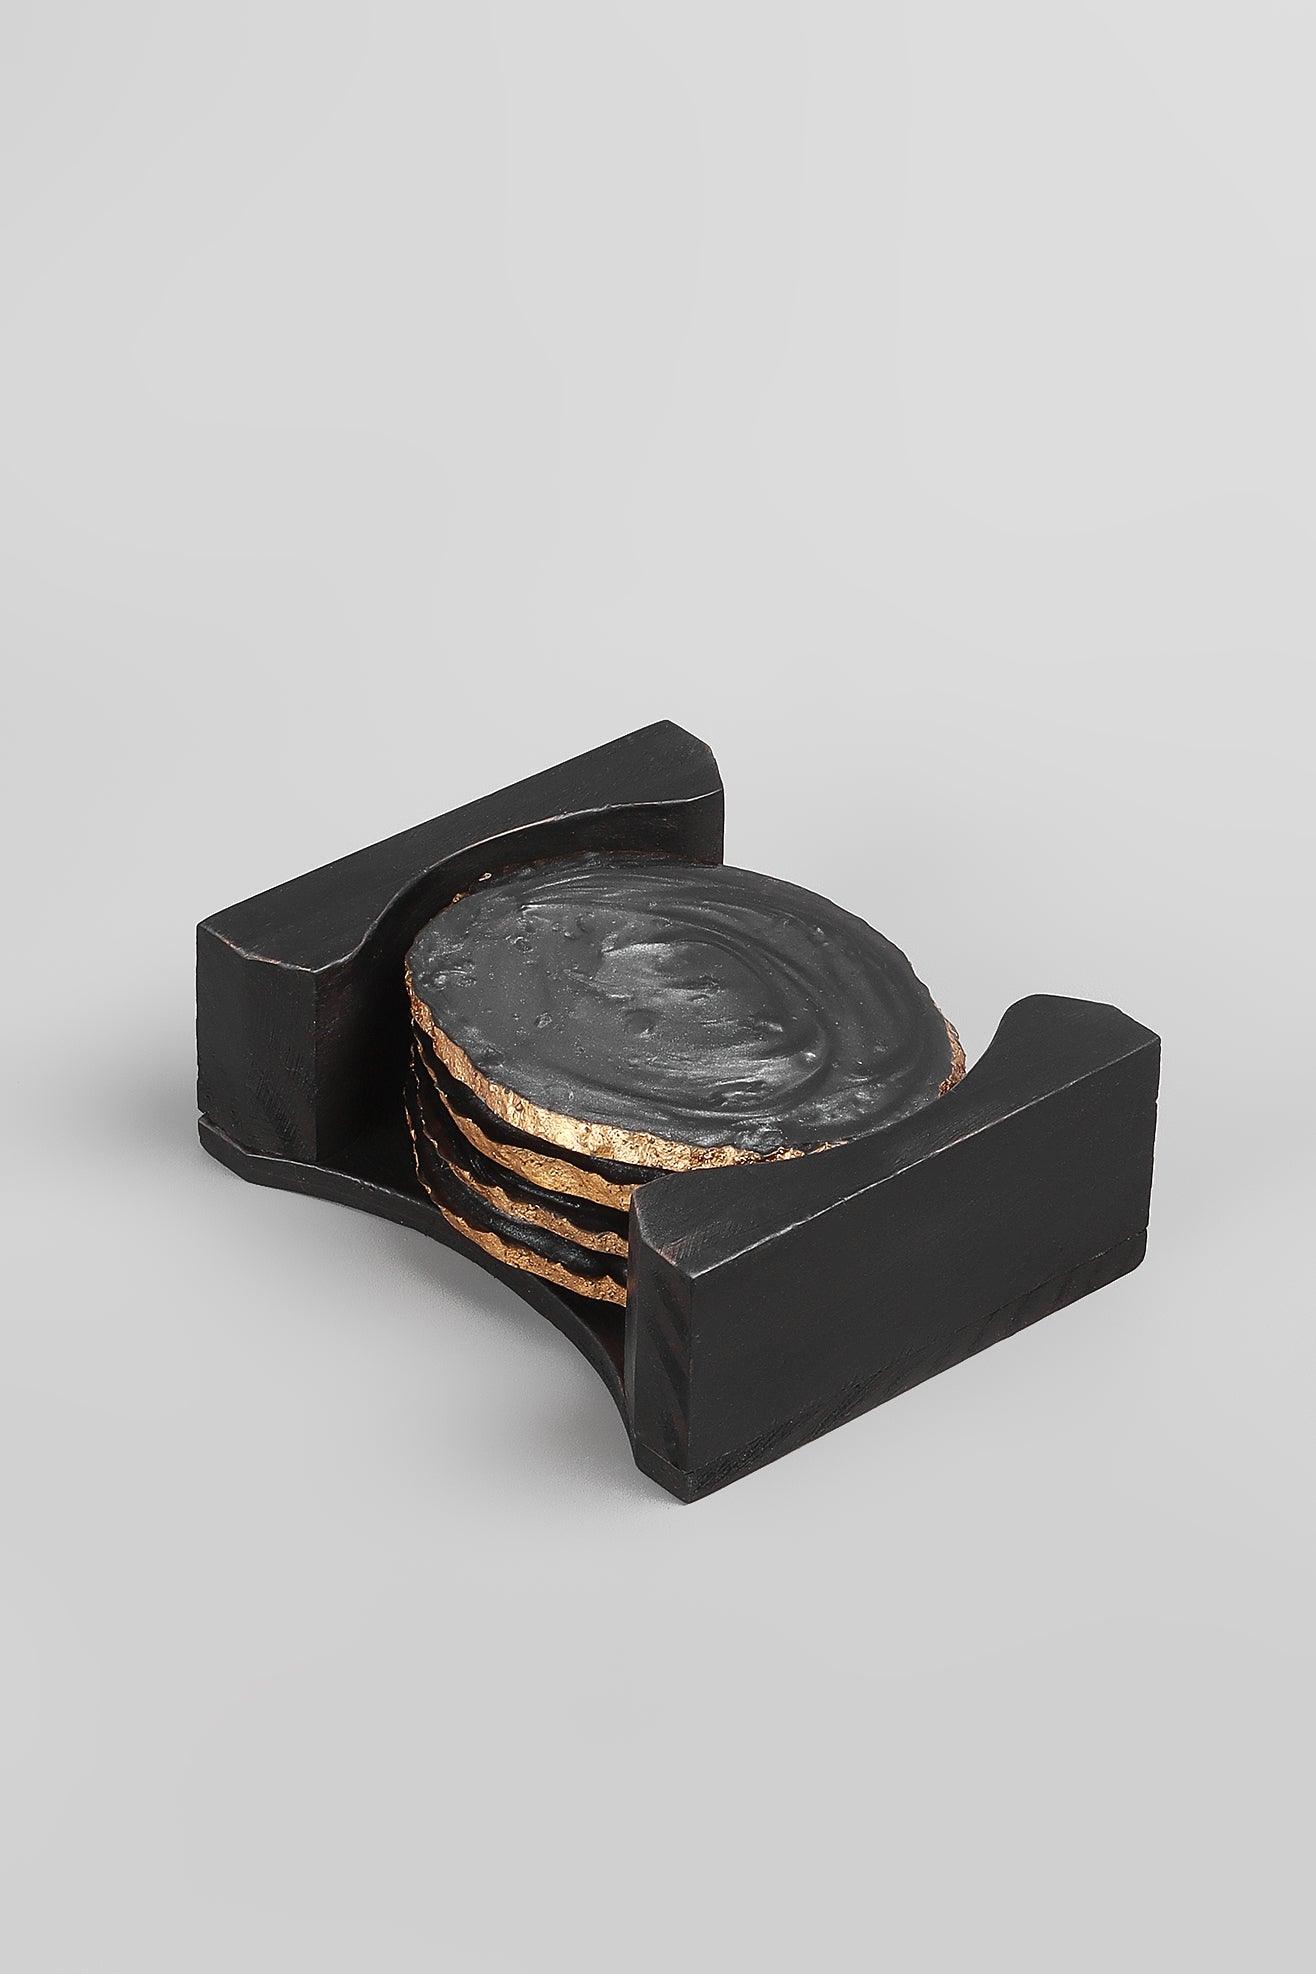 G Decor coasters Black Set of 4 Luxury Black Irregular Oval design Coasters with Gold Finish